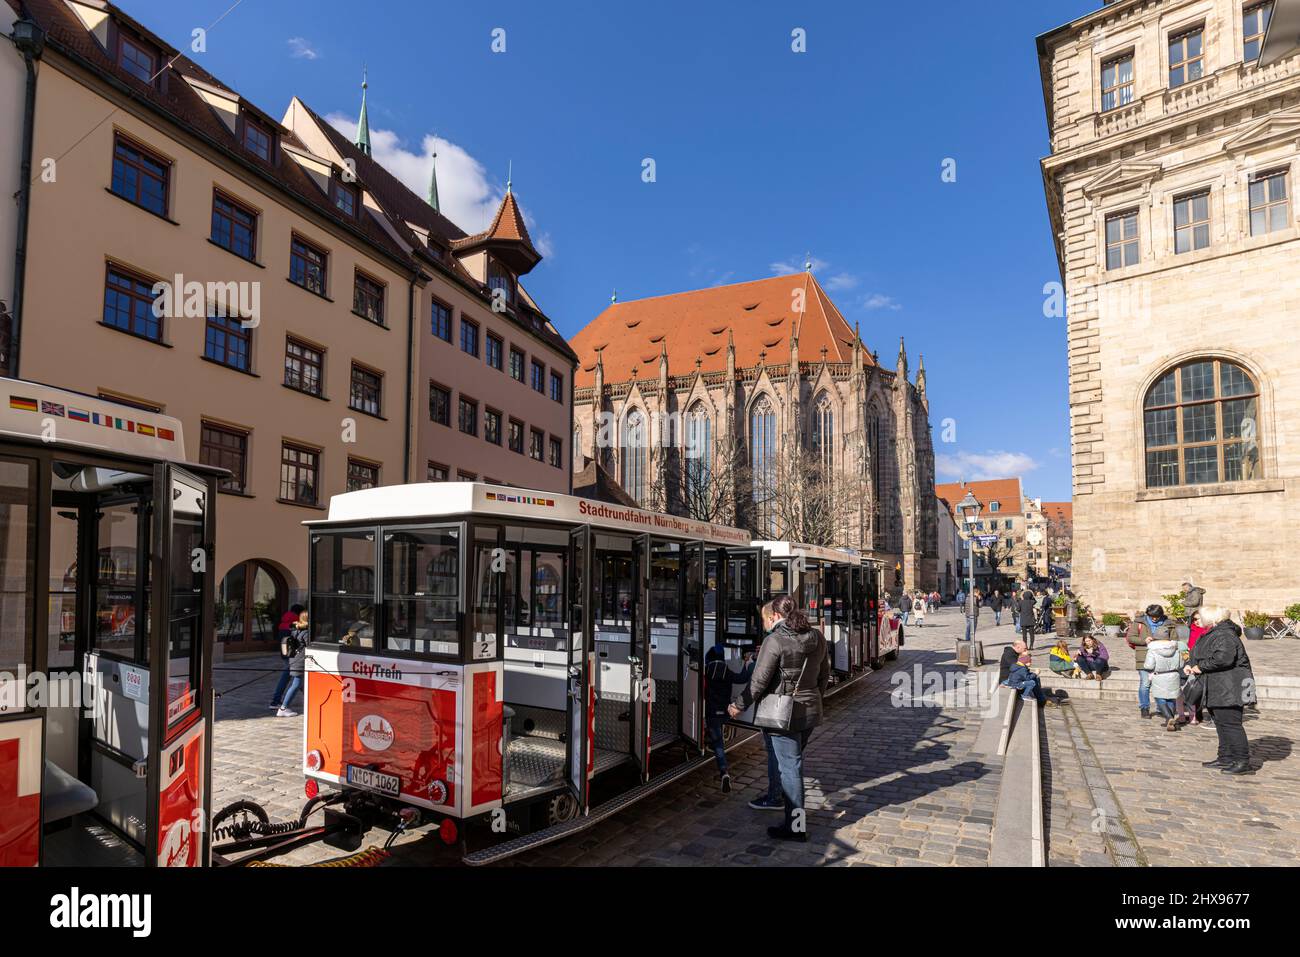 People walking on narrow alleys between historical buildings in Nuremberg old town Stock Photo